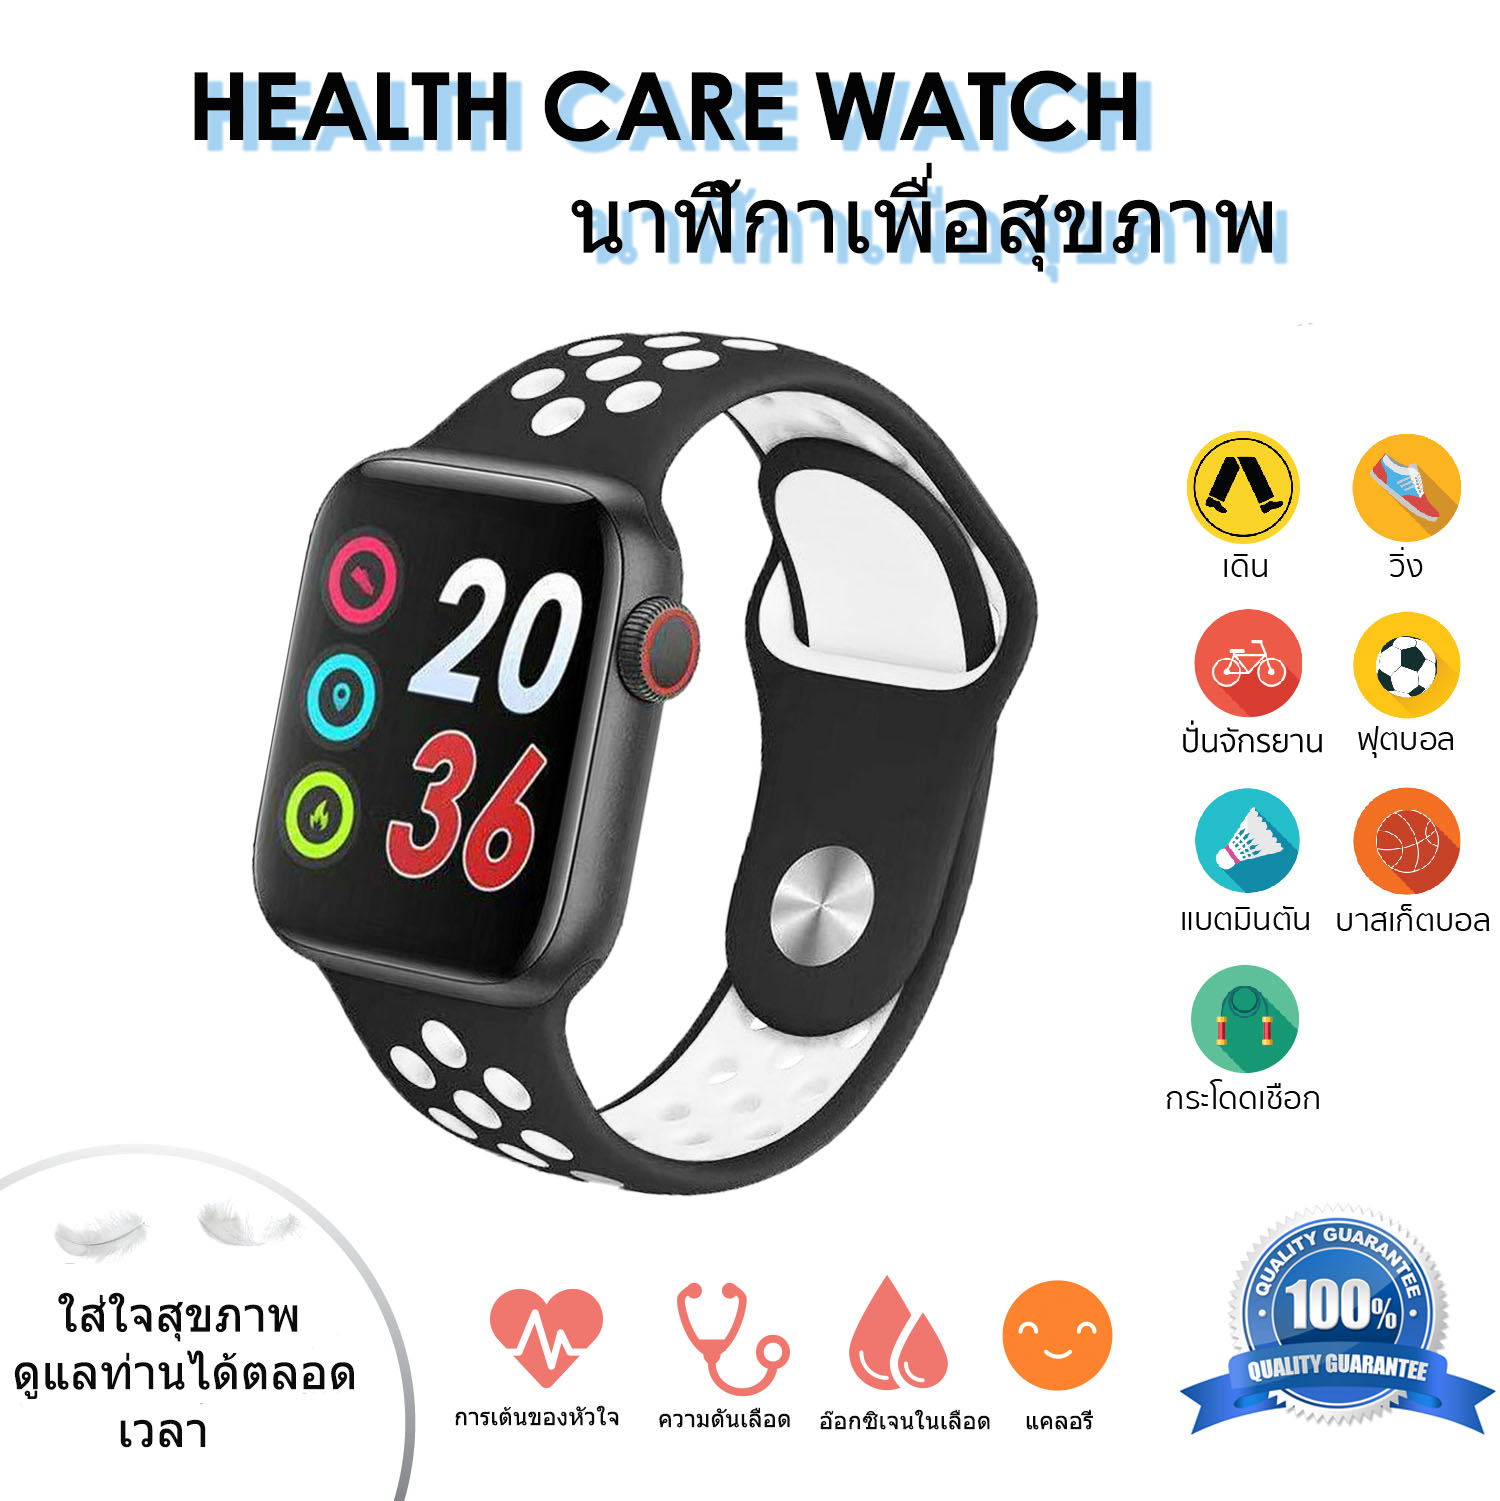 Gi รุ่น HEALTH CARE WATCH นาฬิกา เพื่อสุขภาพ วัดการเต้นของหัวใจ ออกซิเจนในเลือด ความดัน การออกกำลังกาย ทุกความเคลื่อนไหว รับประกันสินค้า By G-item